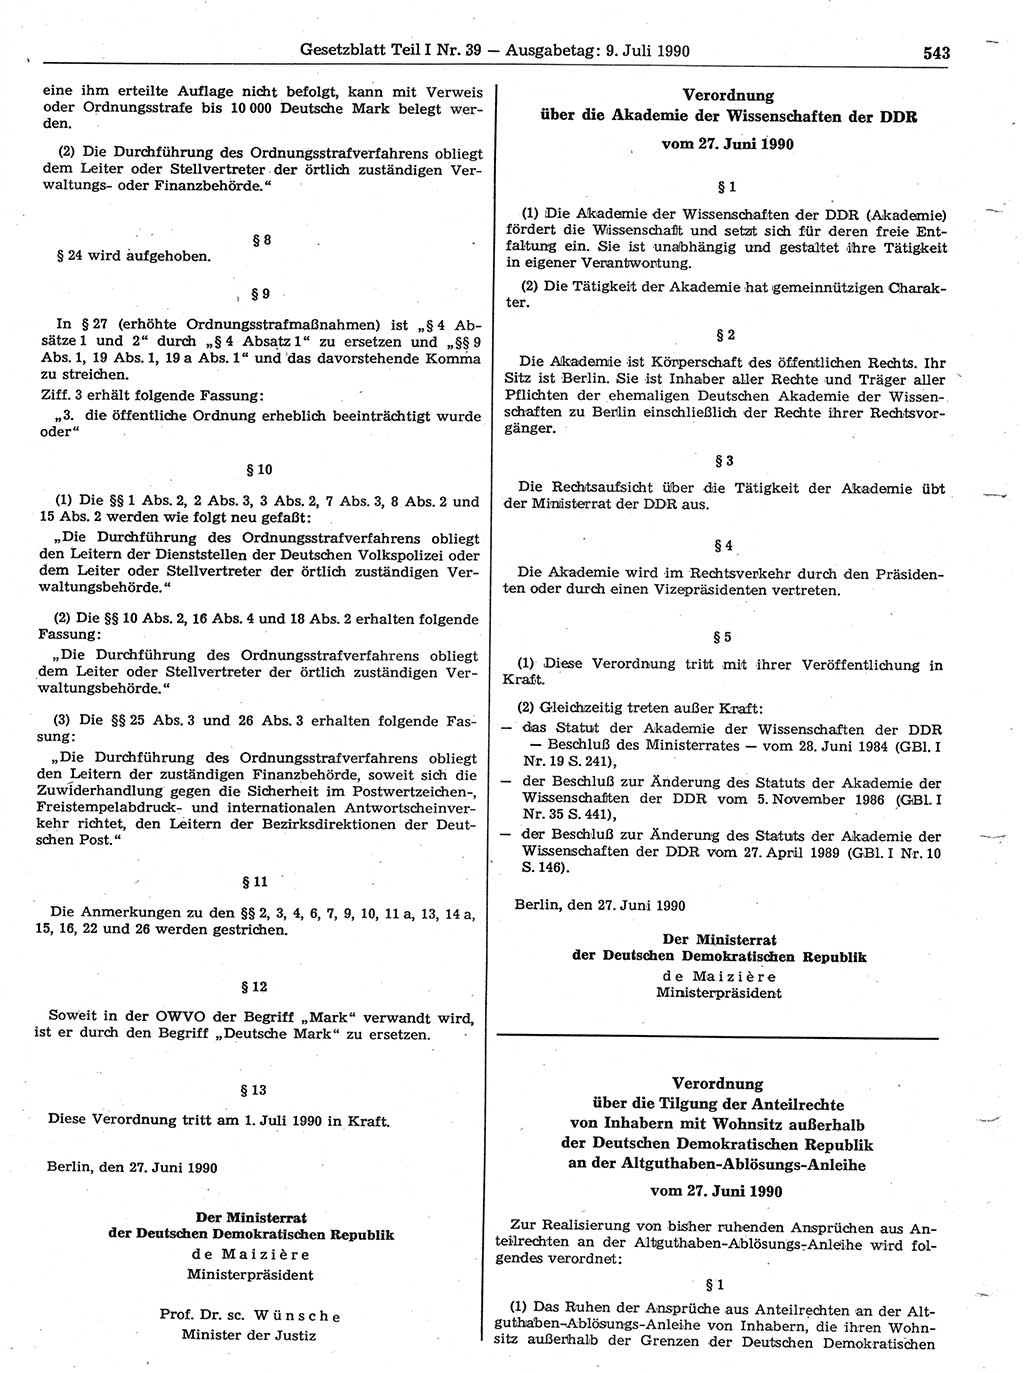 Gesetzblatt (GBl.) der Deutschen Demokratischen Republik (DDR) Teil Ⅰ 1990, Seite 543 (GBl. DDR Ⅰ 1990, S. 543)